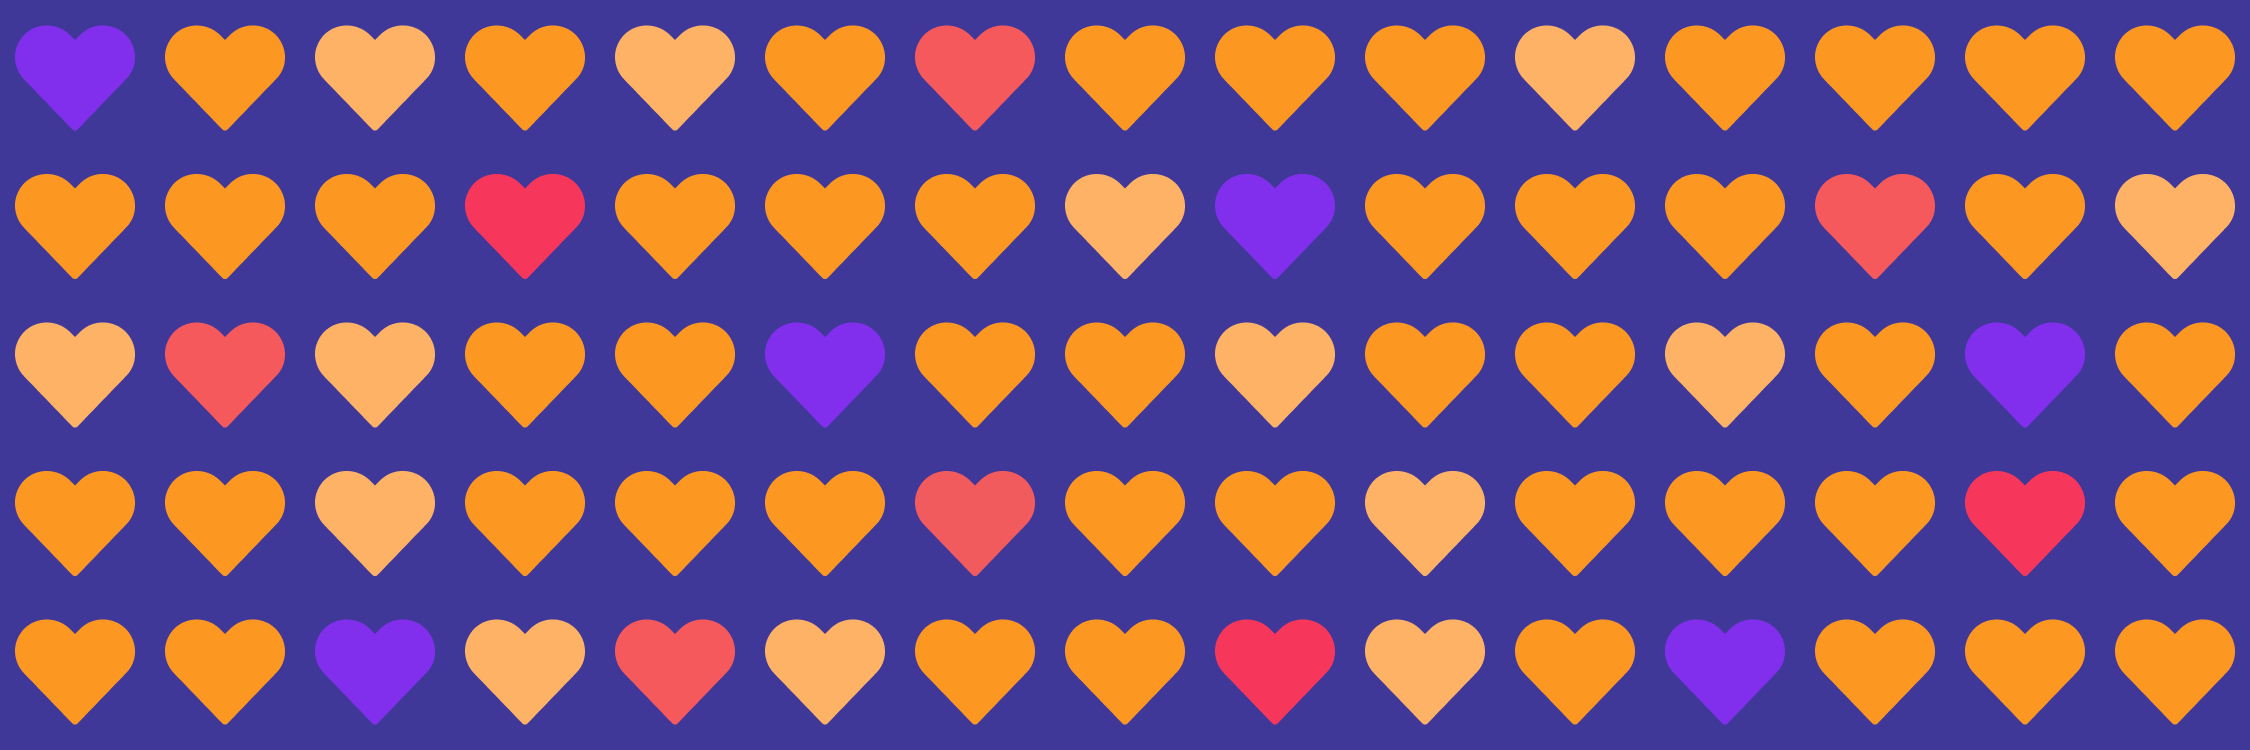 Heart emoji pattern on dark background